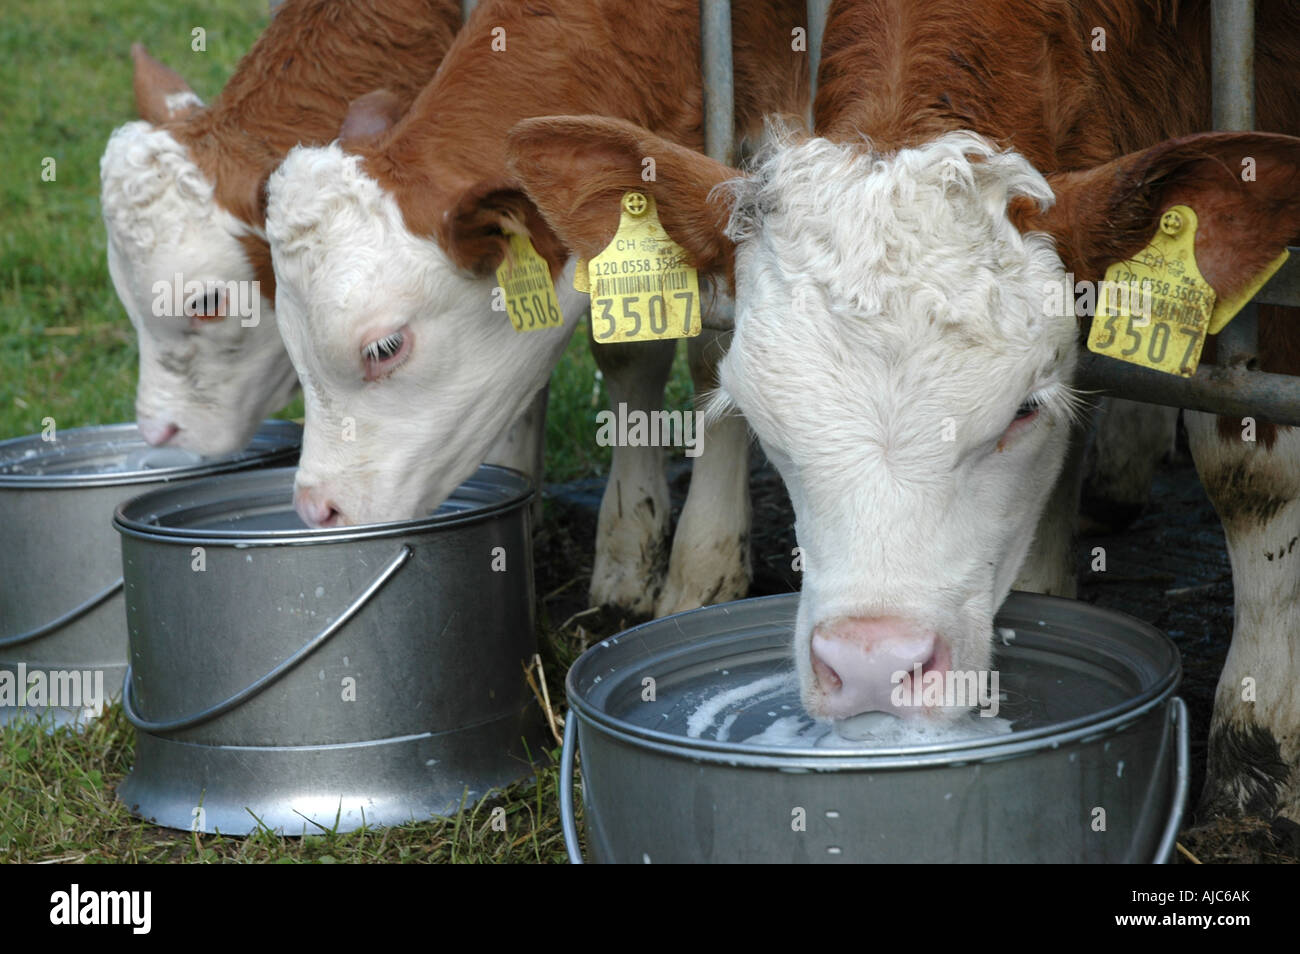 La production de viande de bovins élevés pour être nourris avec du lait dans la benne avec les tétines de caoutchouc alpes bernoises en Suisse Banque D'Images